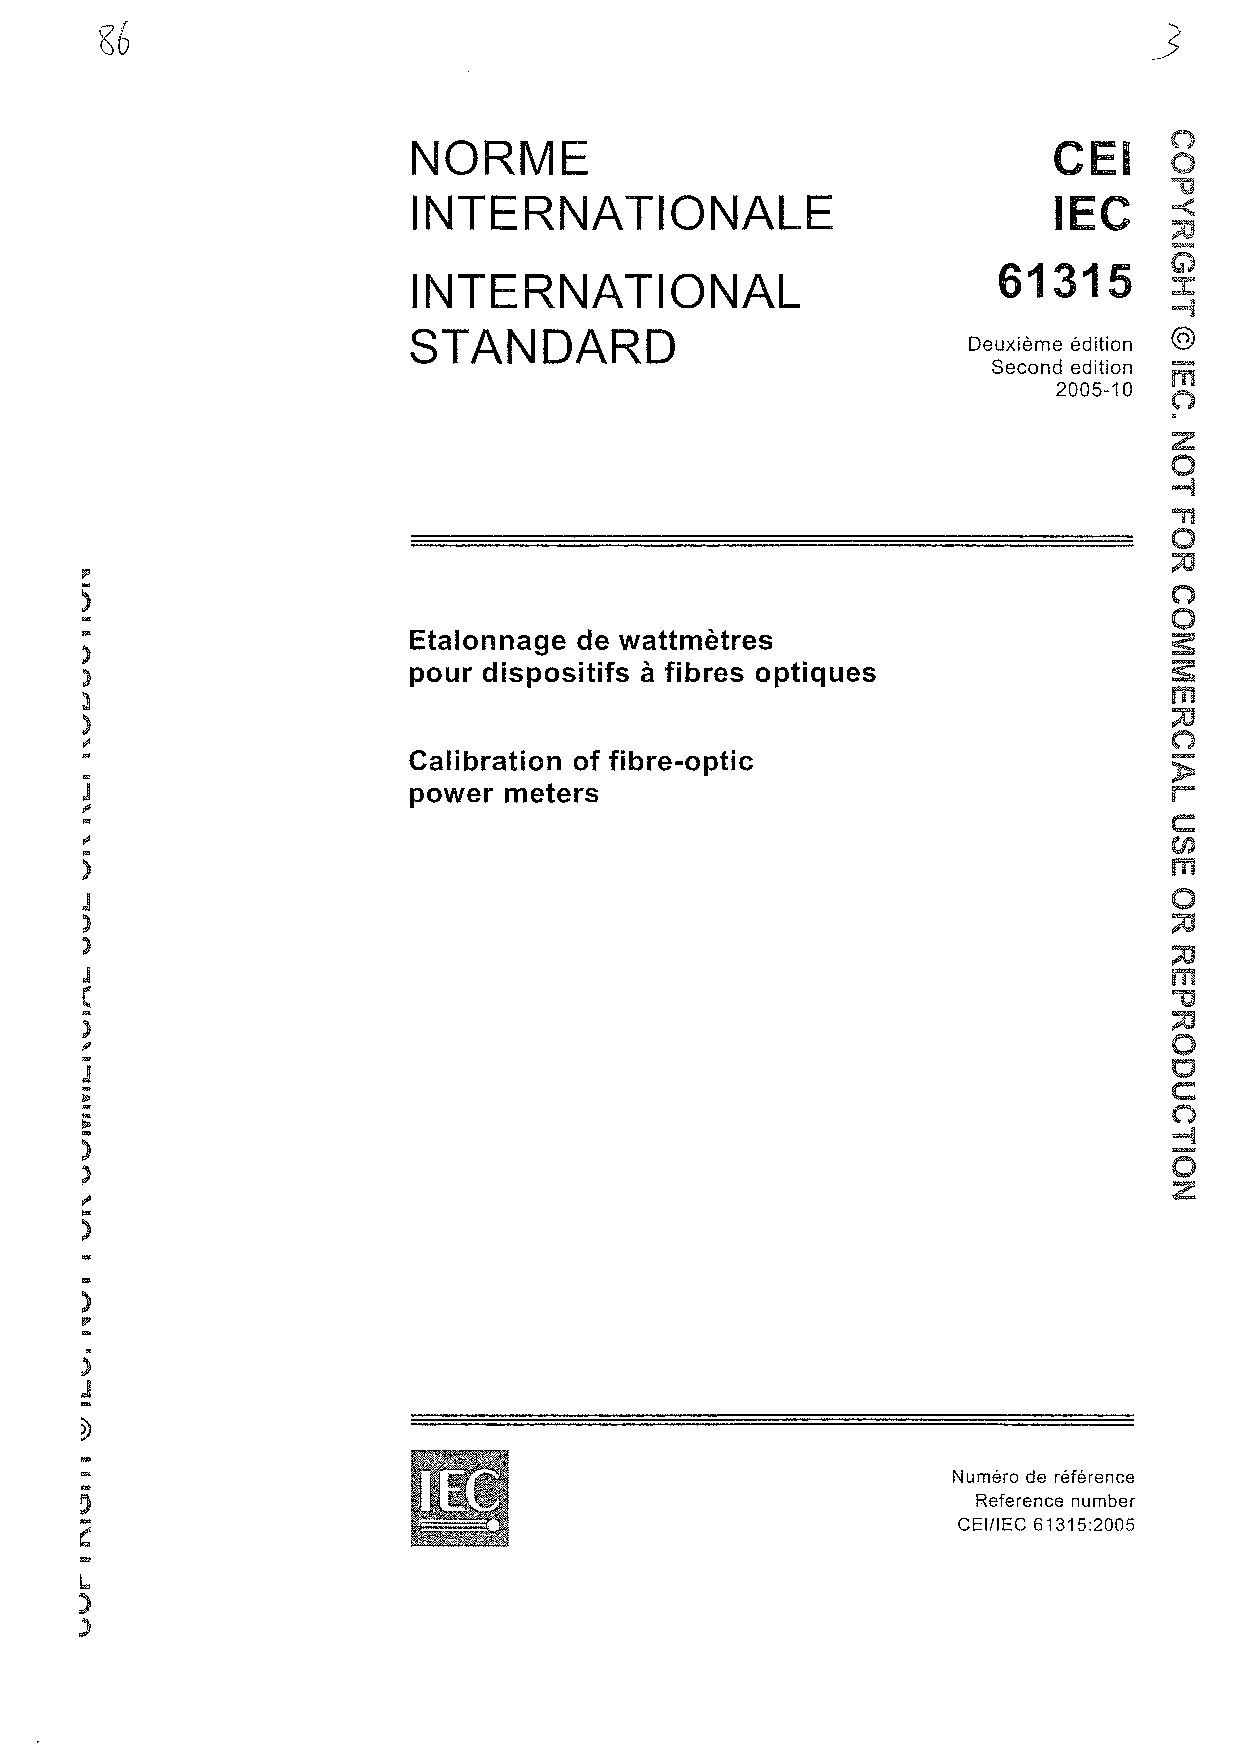 IEC 61315-2005